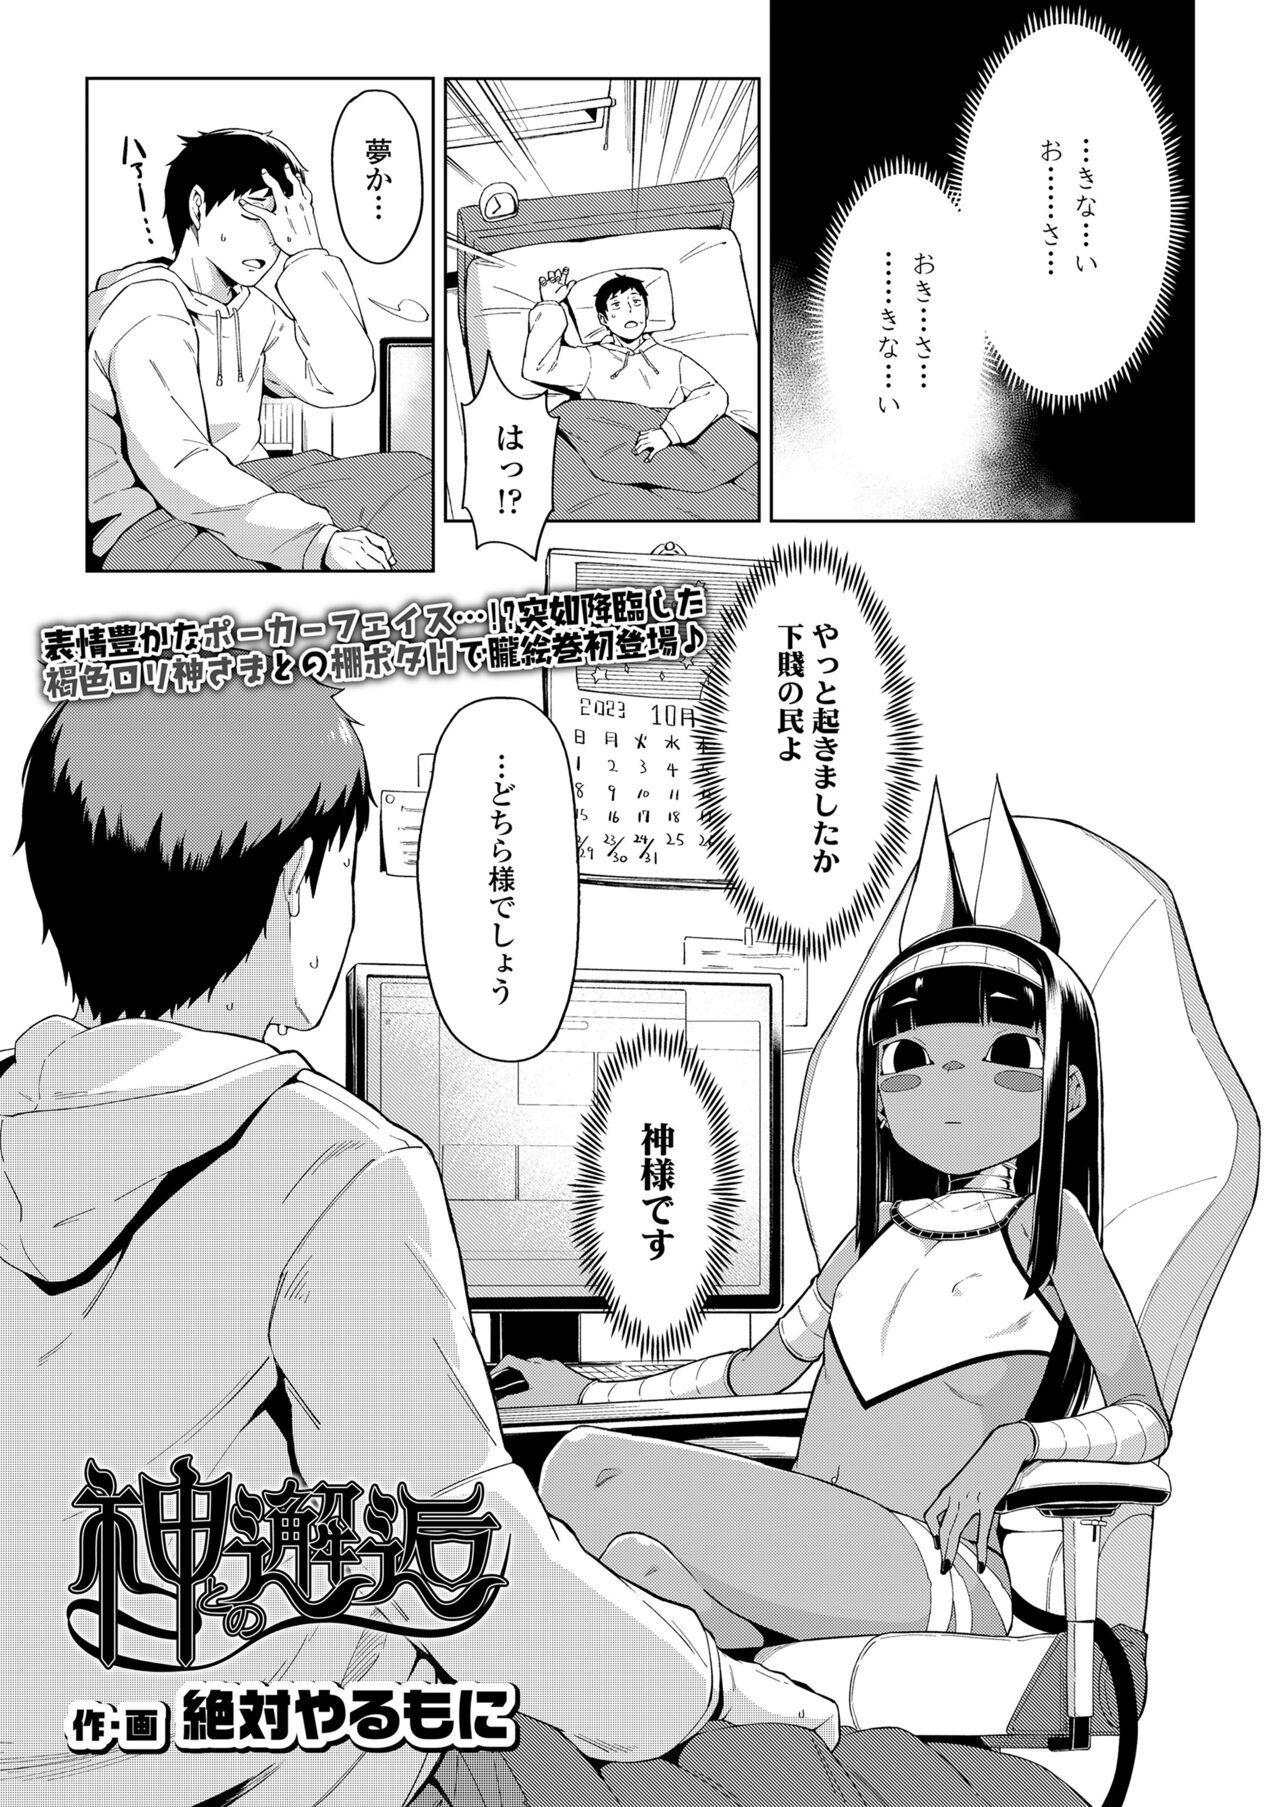 Leaked Towako Oboro Emaki 13 Culos - Page 3